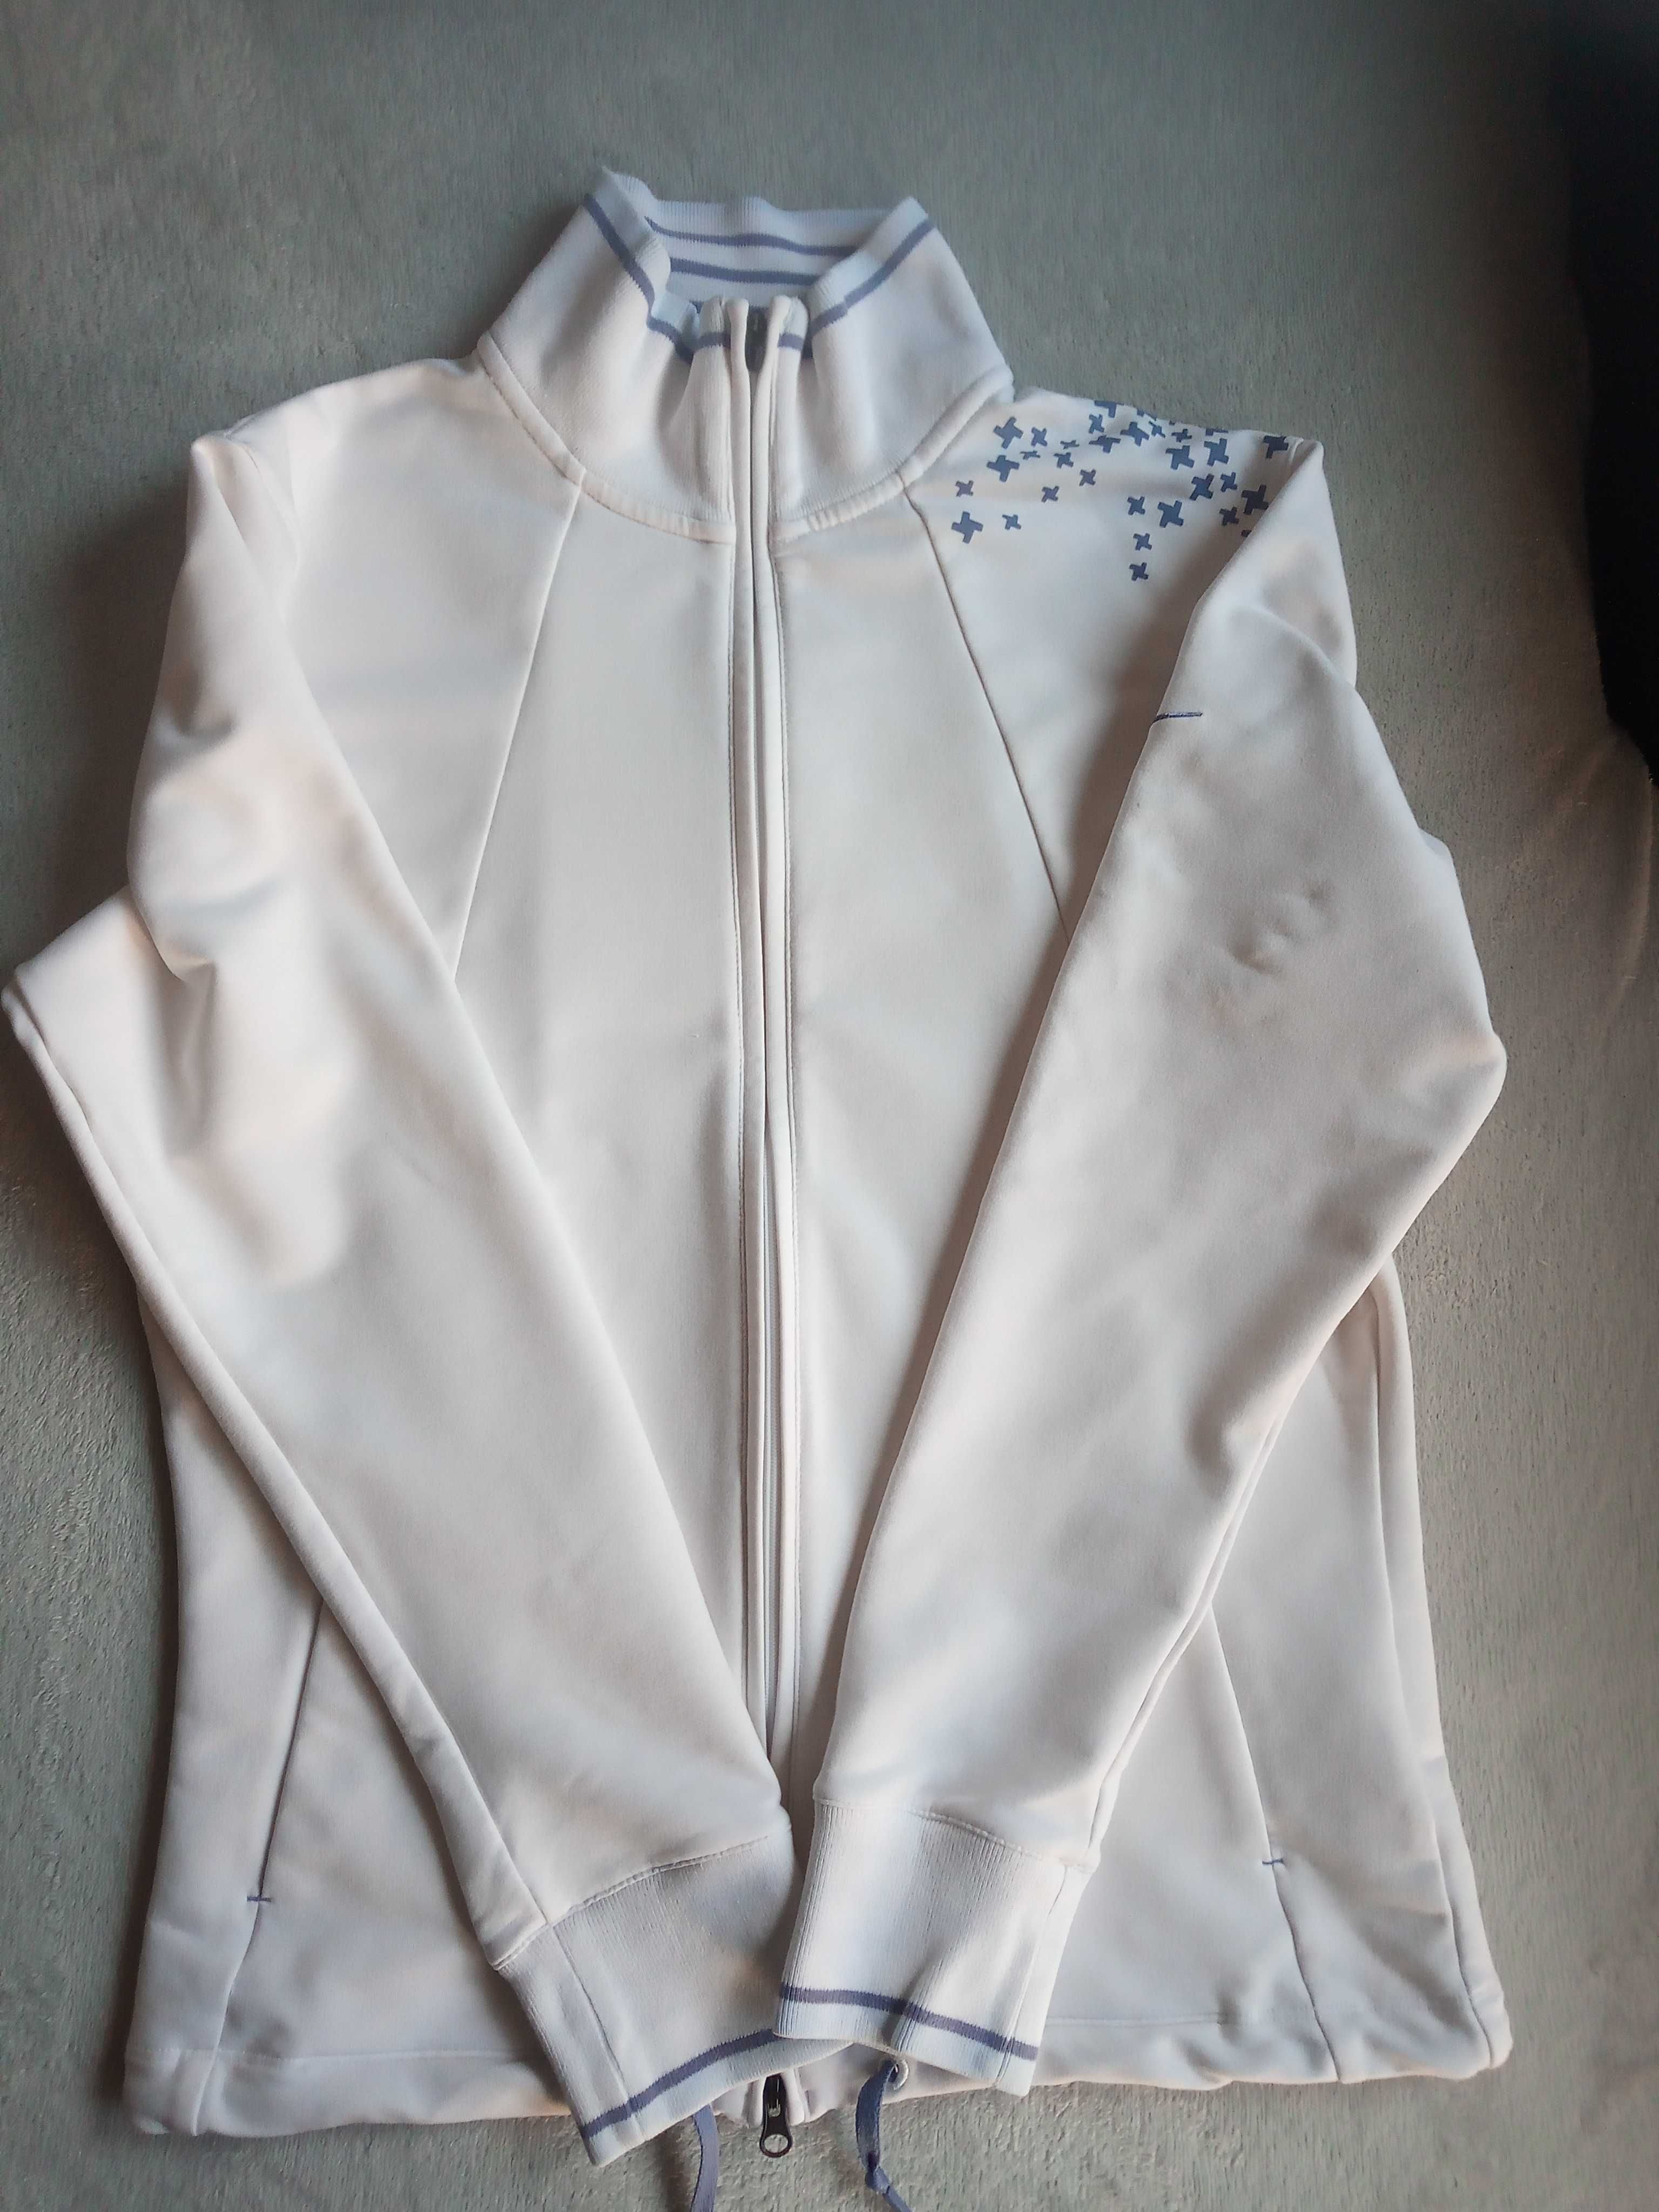 Rozpinana bluza NIKE, kremowa, kieszenie, r. 168 cm / M